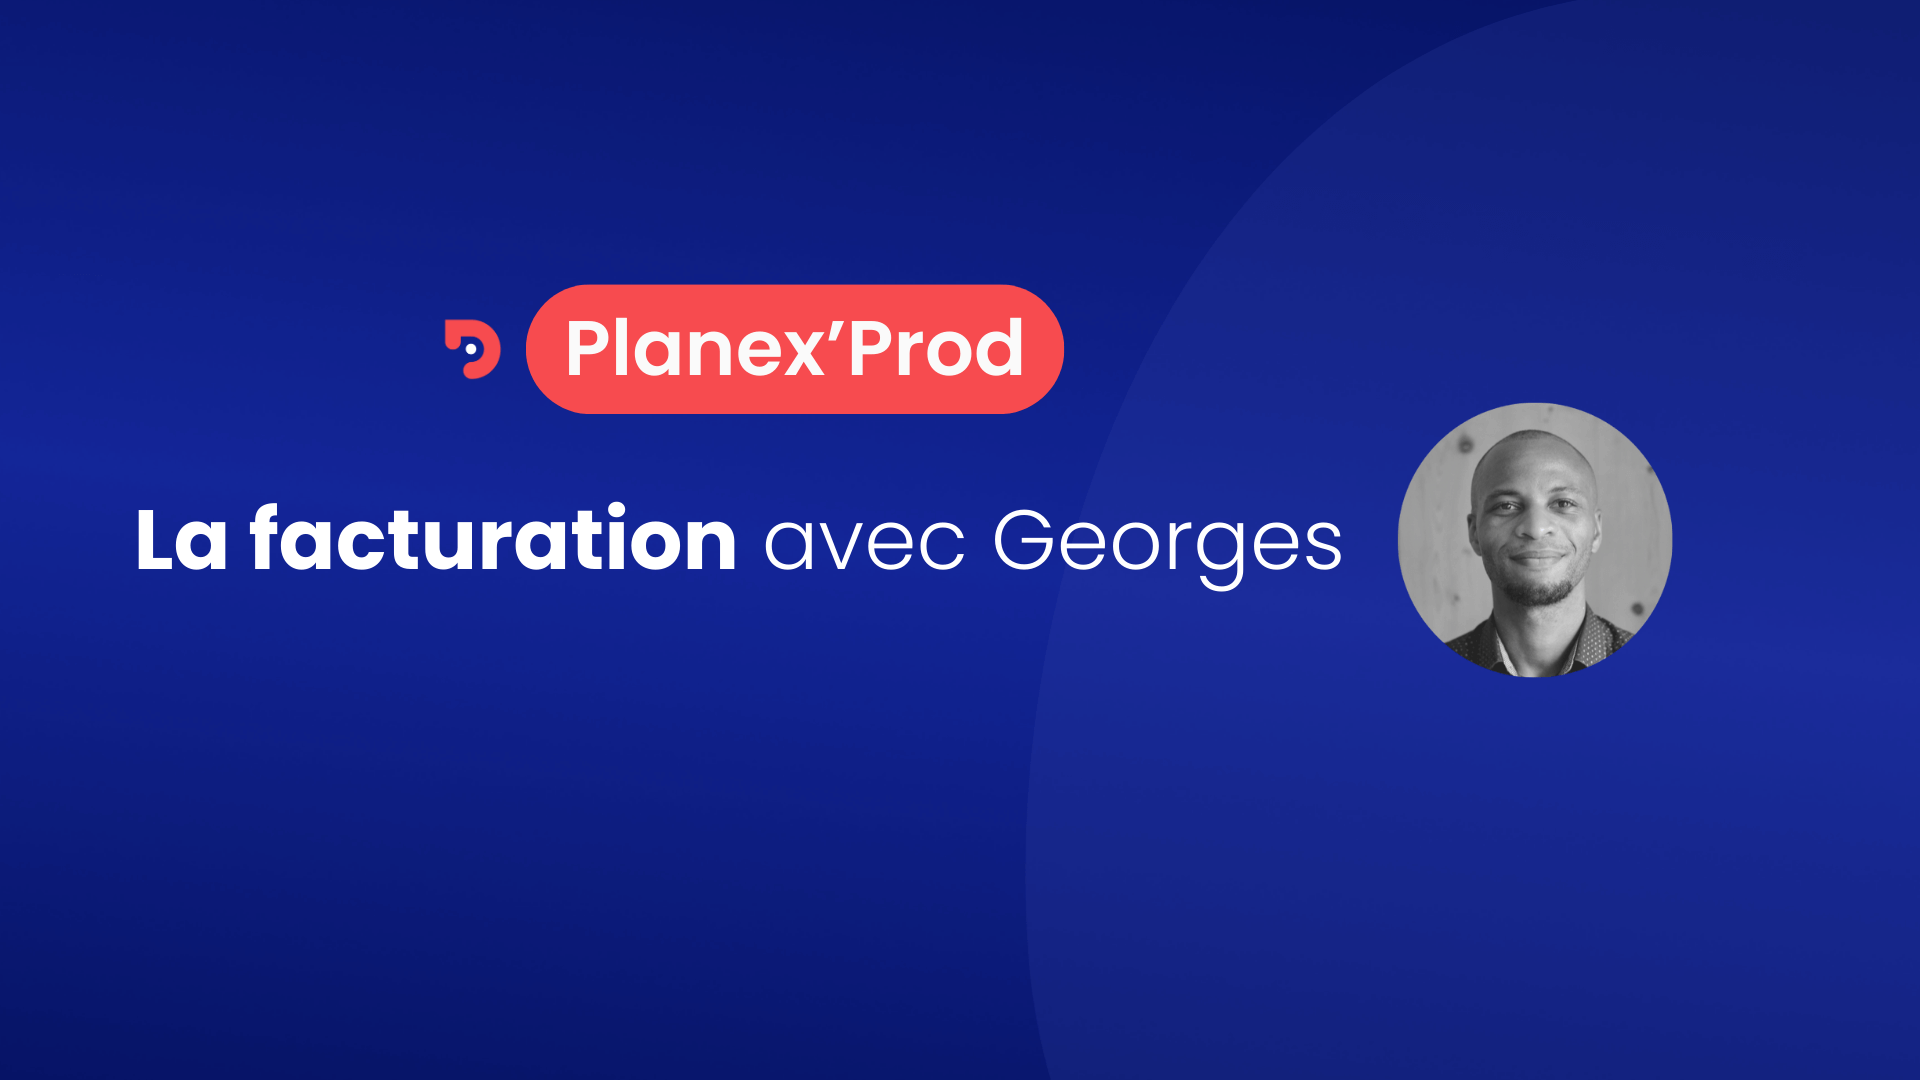 Vignette pour présenter le tuto Planex Prod dédié à la facturation avec Georges